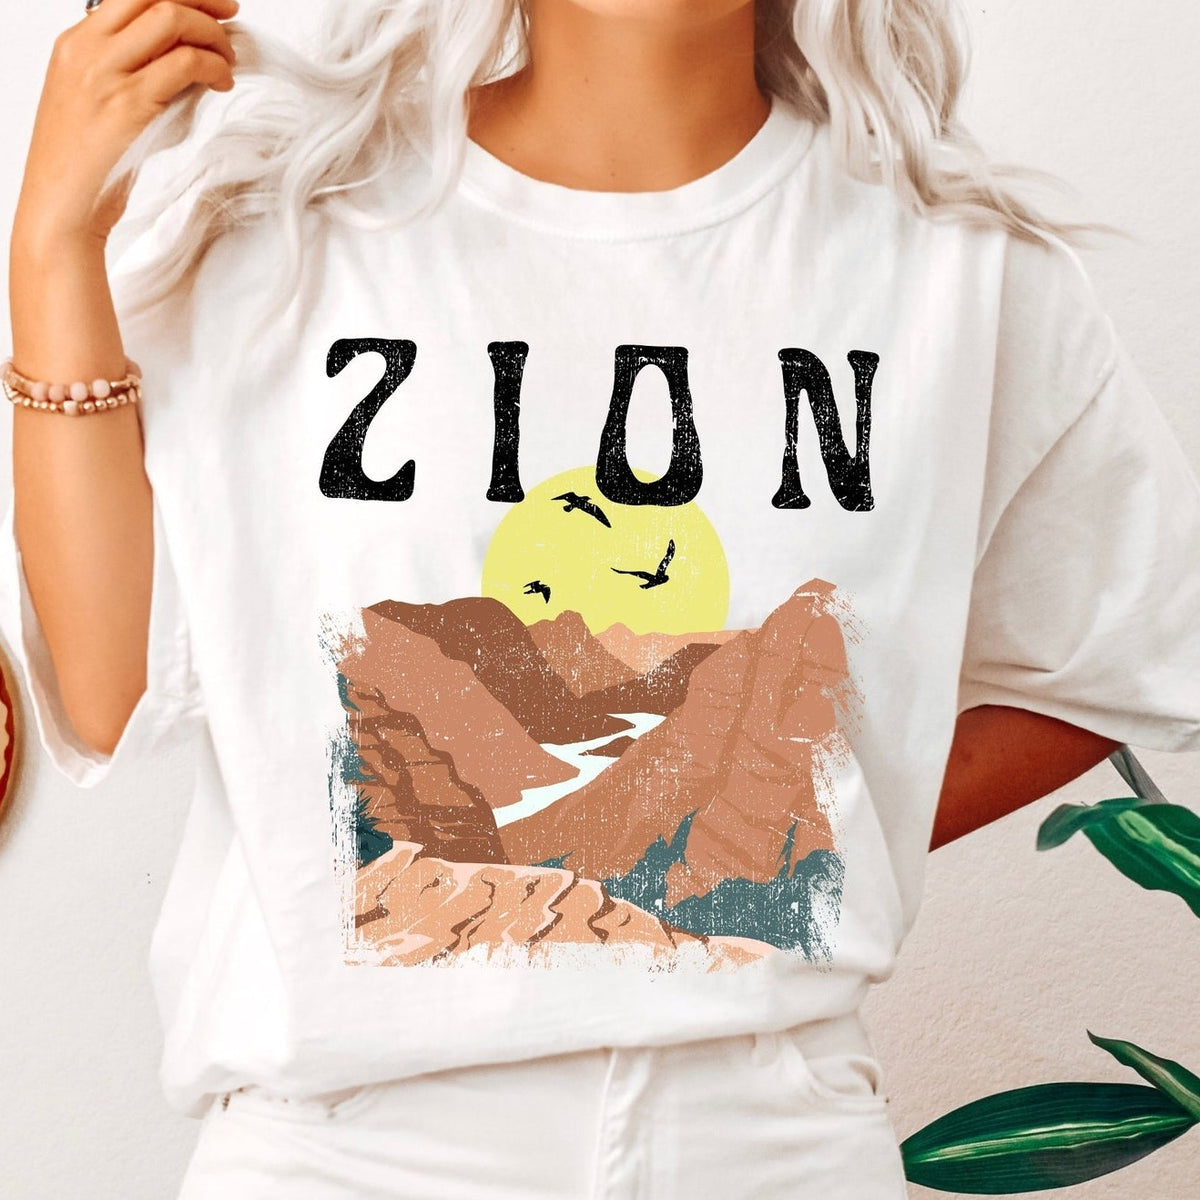 Zion National Park Retro Comfort Colors Tshirt